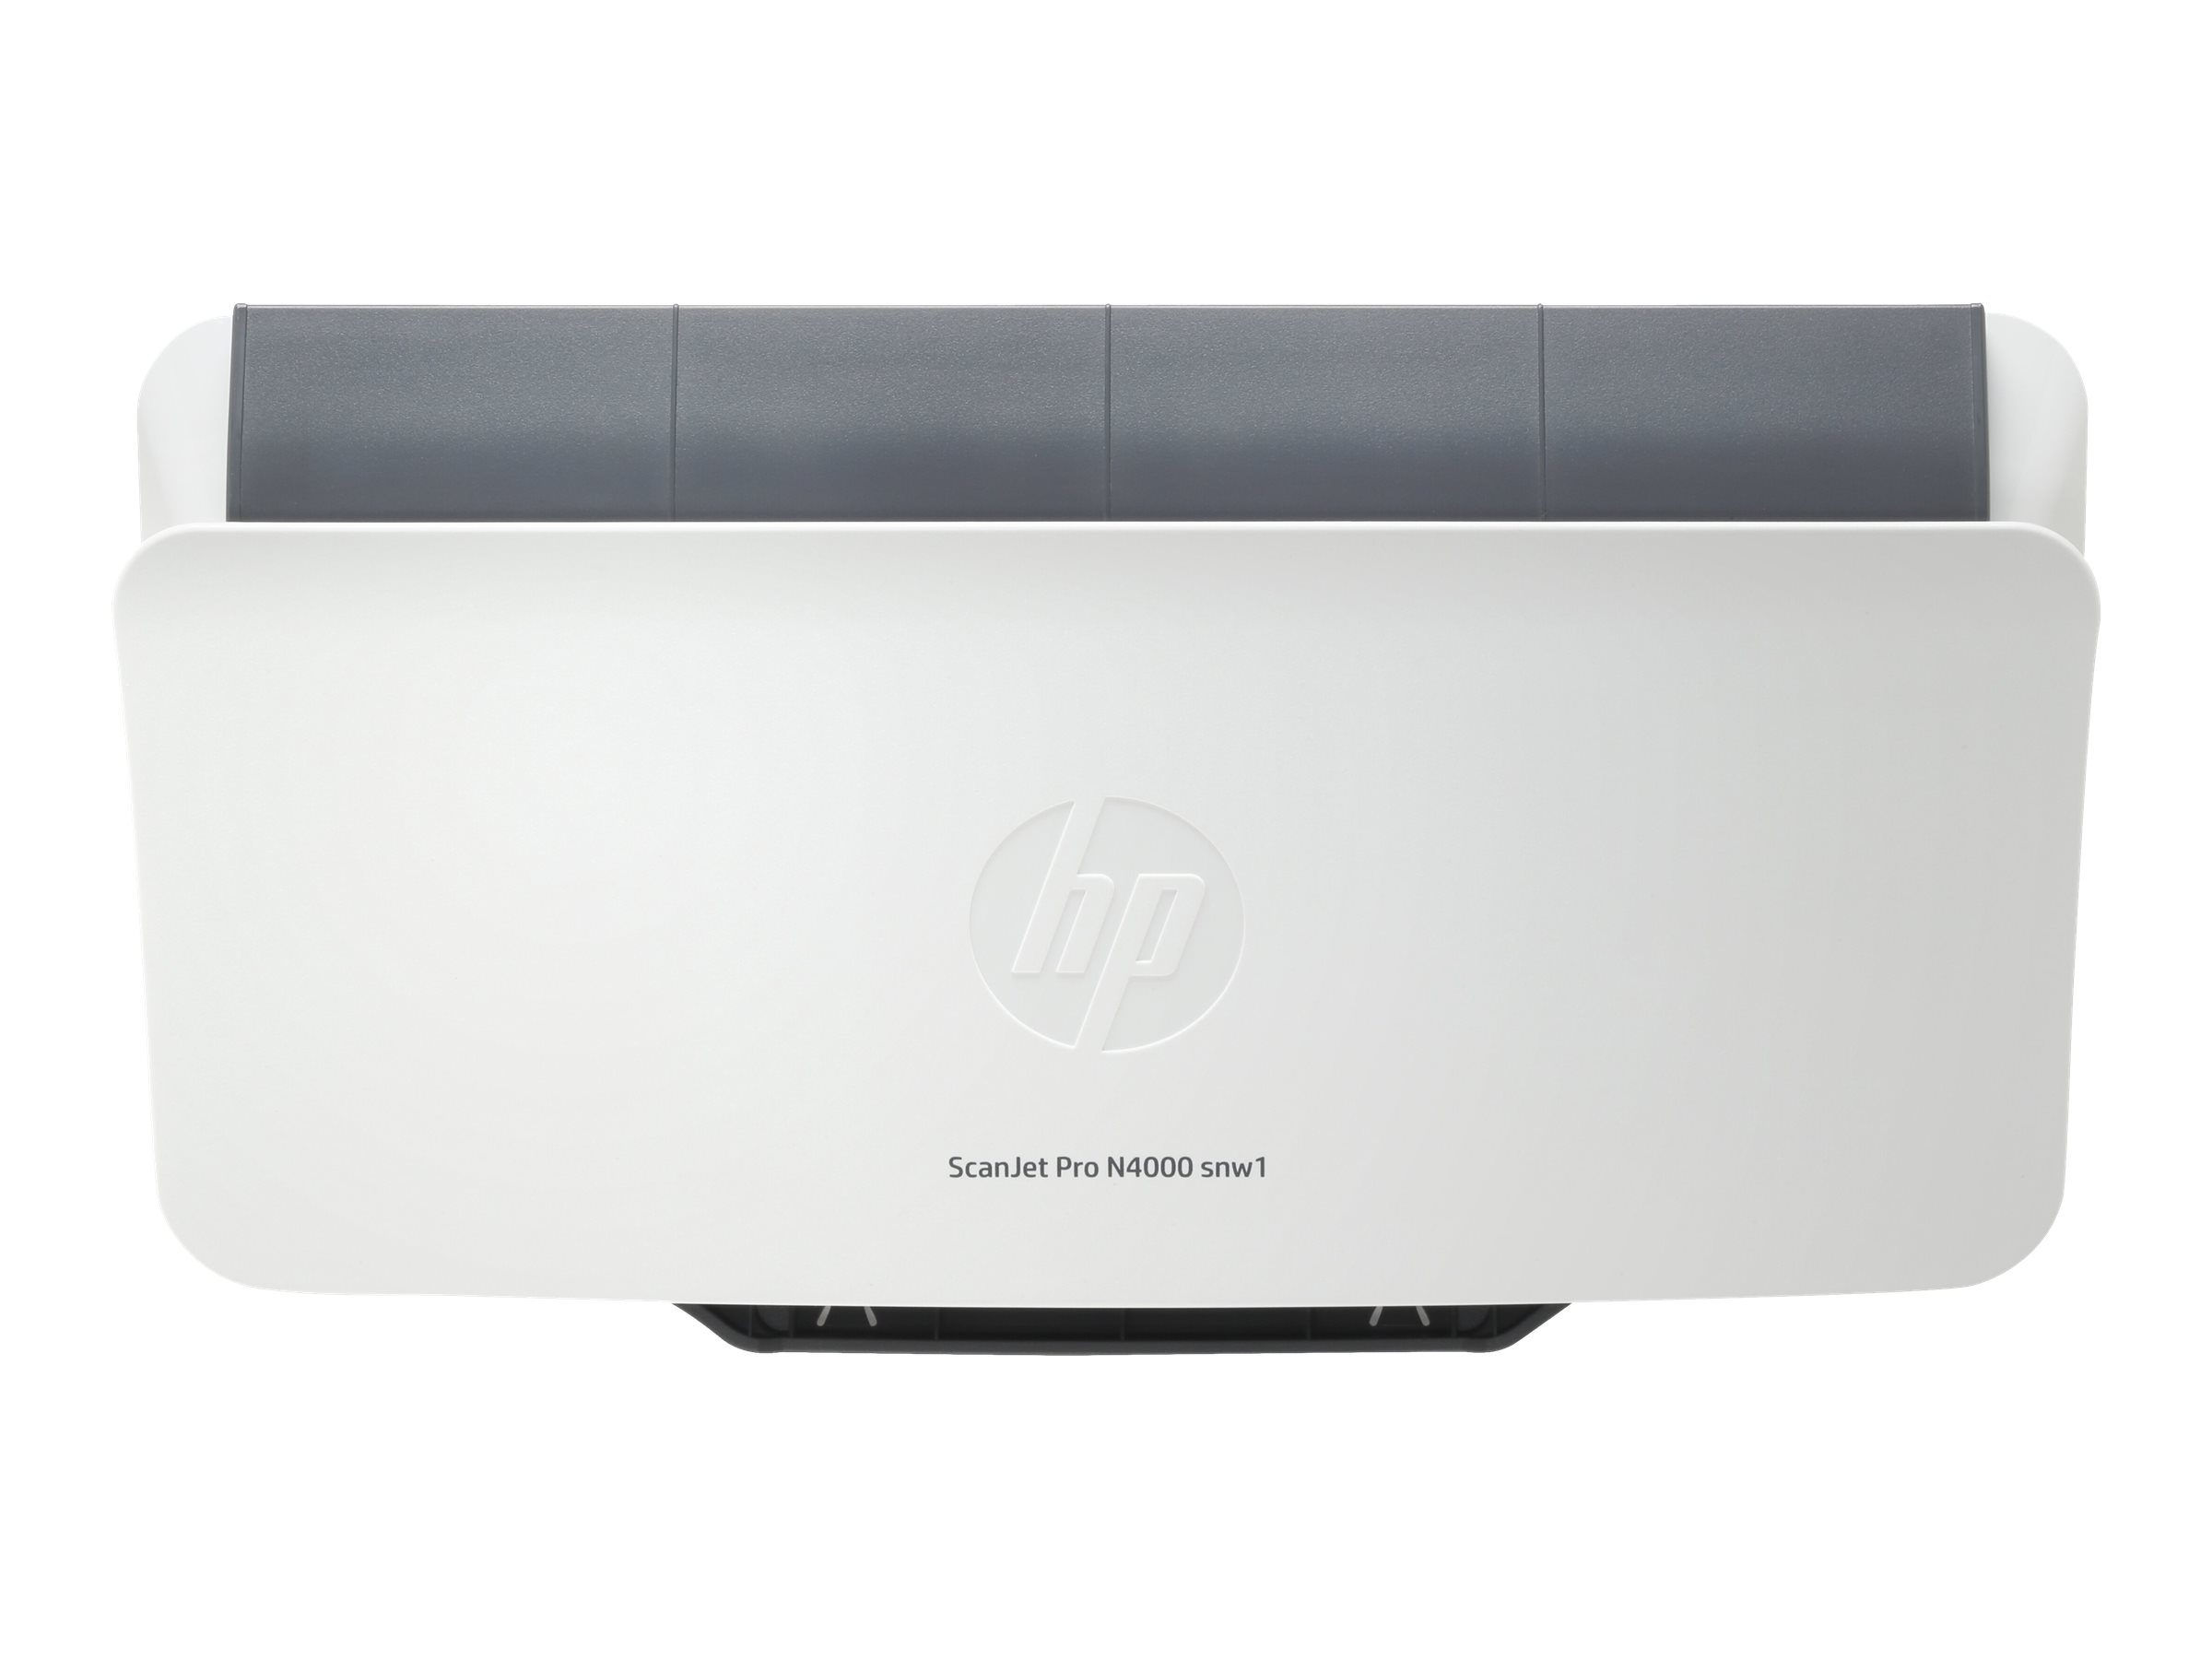 HP Scanjet Pro N4000 snw1 Sheet-feed - Dokumentenscanner - CMOS / CIS - Duplex - 216 x 3100 mm - 600 dpi x 600 dpi - bis zu 40 Seiten/Min. (einfarbig) - automatischer Dokumenteneinzug (50 Blätter) - bis zu 4000 Scanvorgänge/Tag - USB 3.0, LAN, Wi-F...